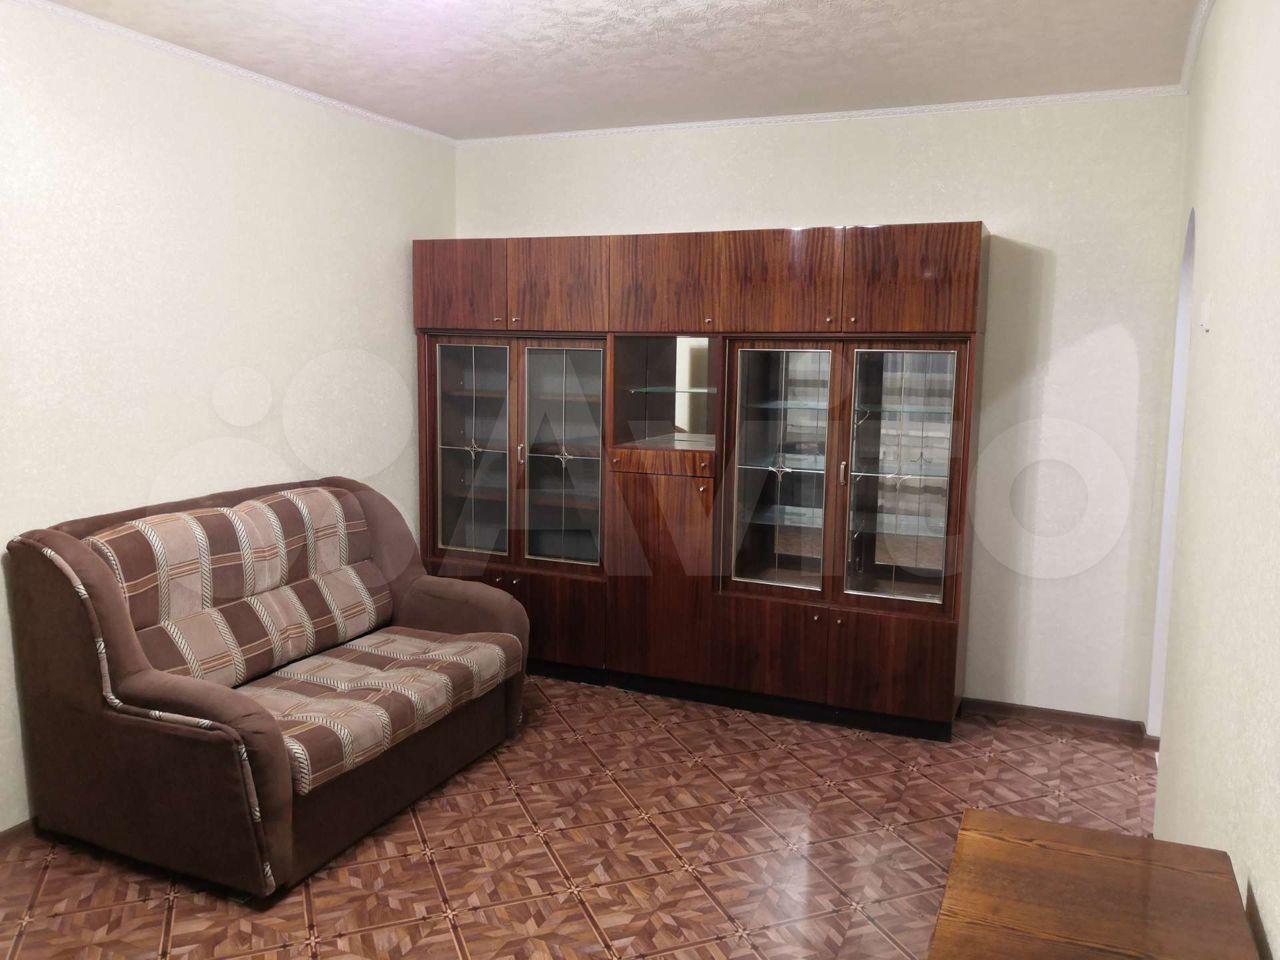 Сниму квартиру в барабинске на длительный срок с мебелью недорого от хозяина